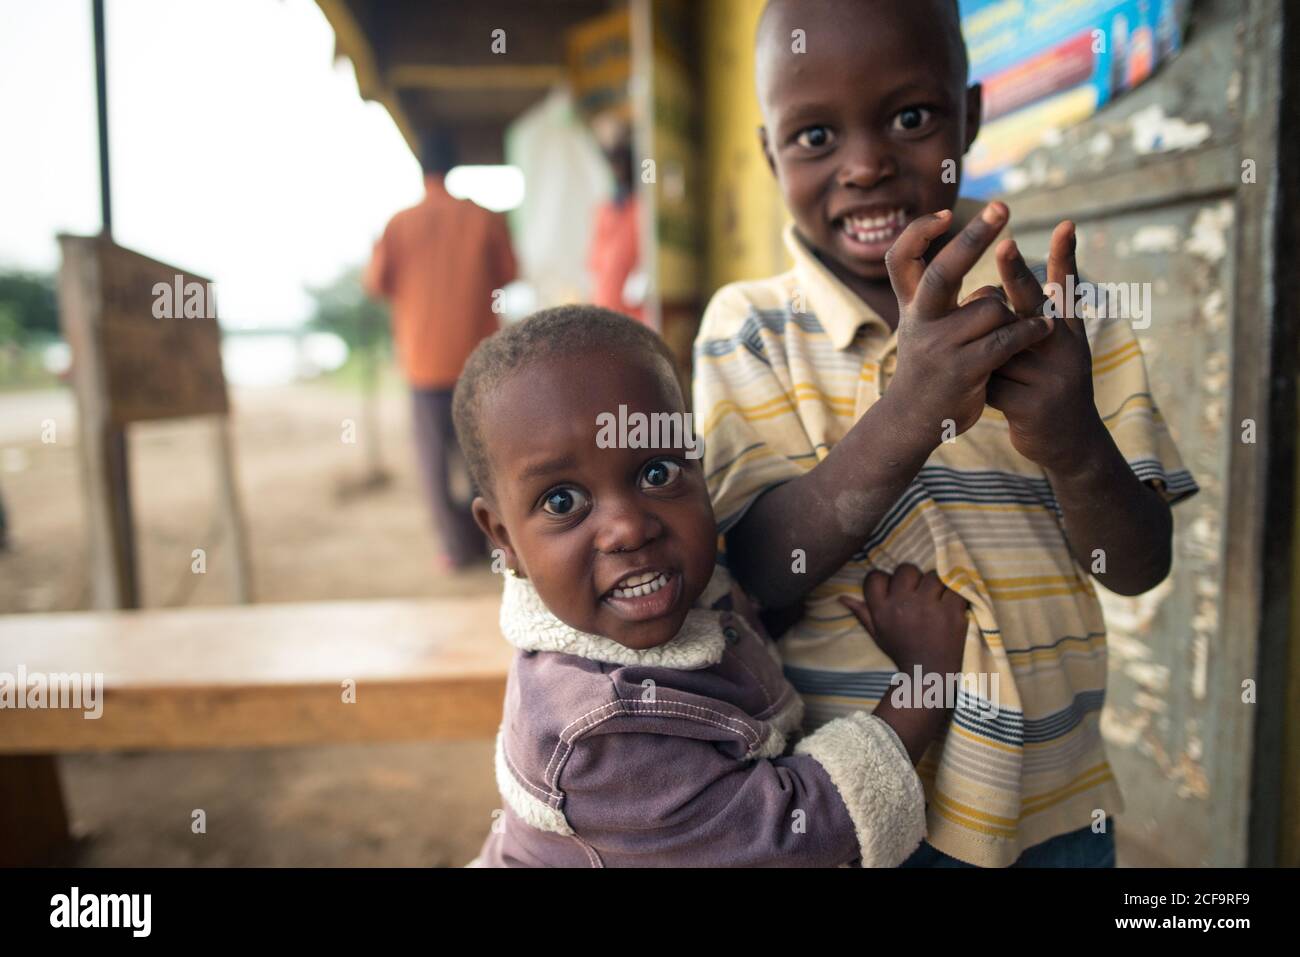 Uganda - November, 26 2016: Kahle afrikanische Kinder blicken in die Kamera, während sie draußen in einem Dorf stehen Stockfoto